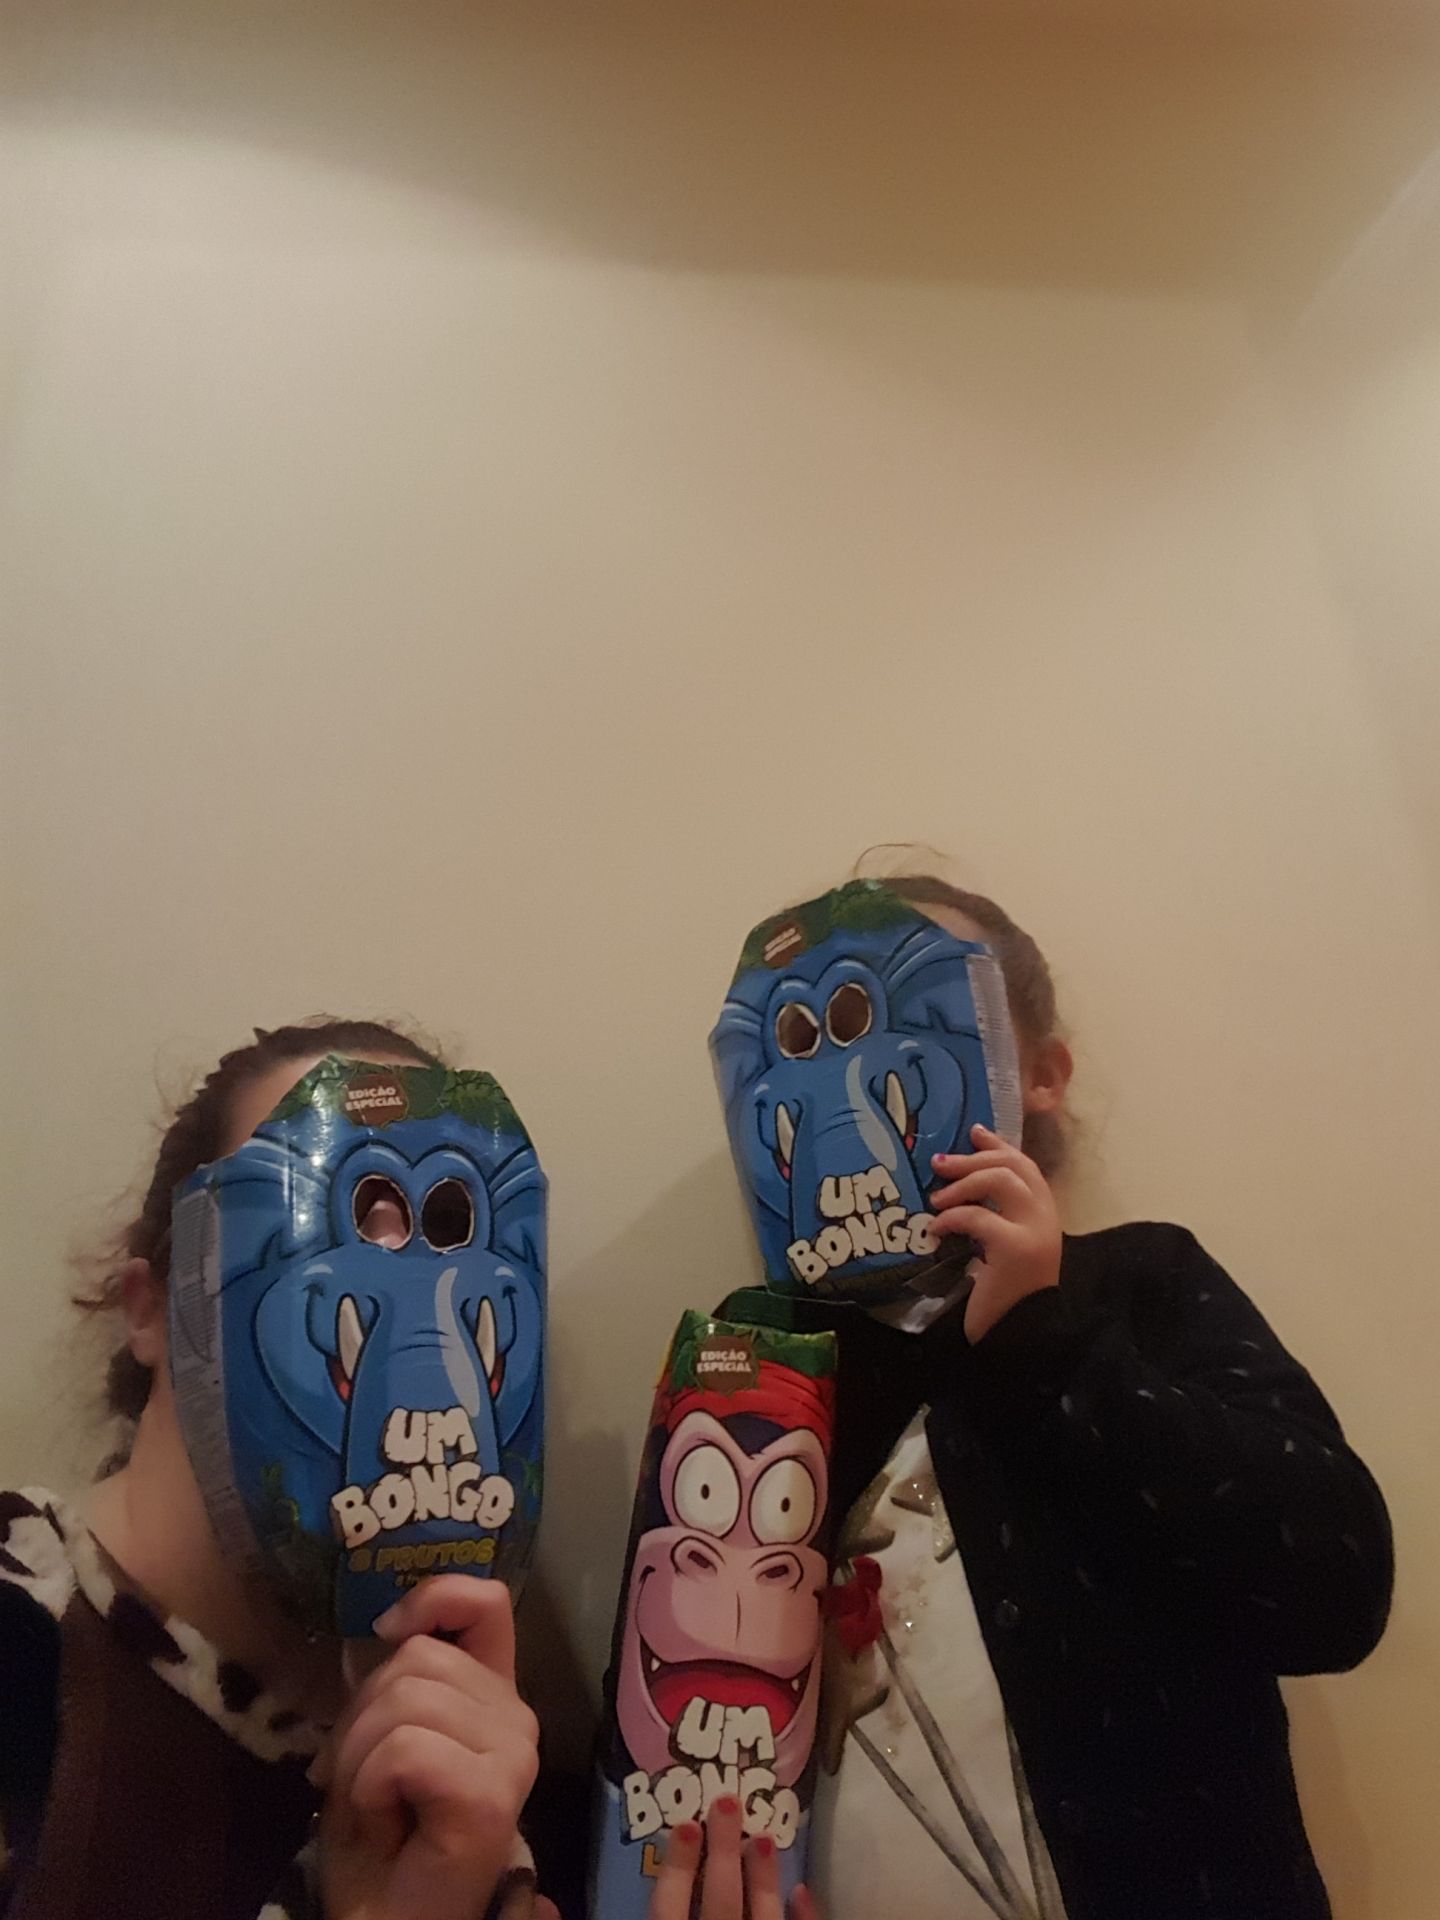 Máscaras Um Bongo